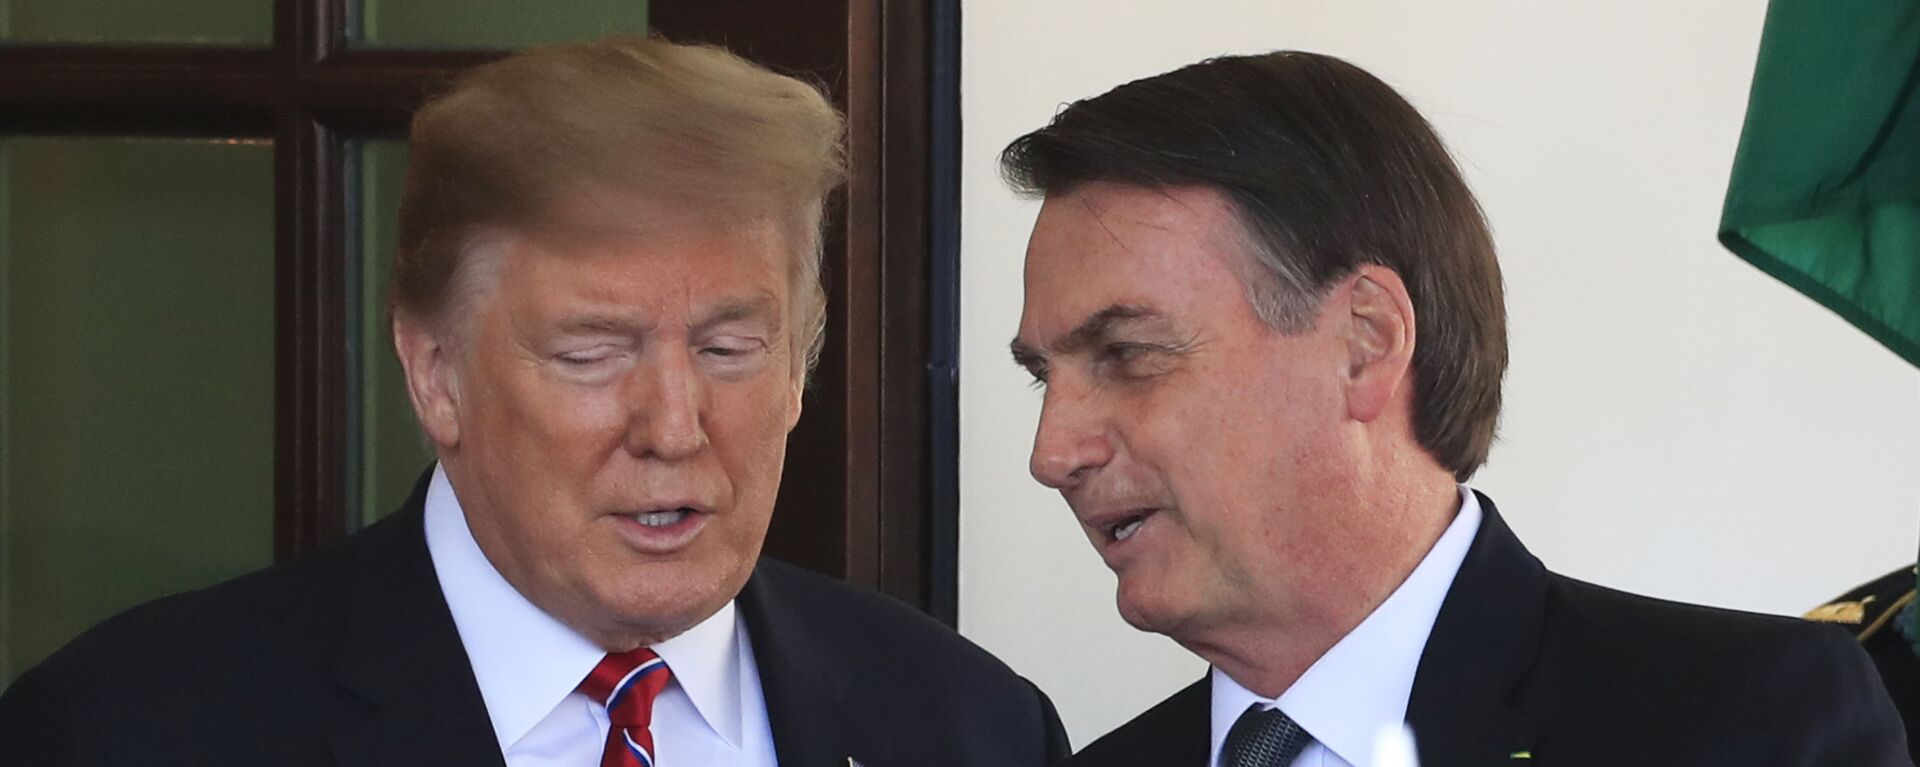 Em Washington, o presidente dos Estados Unidos, Donald Trump (à esquerda), e o presidente do Brasil, Jair Bolsonaro (à direita), conversam na Casa Branca em 19 de março de 2019. - Sputnik Brasil, 1920, 12.09.2021